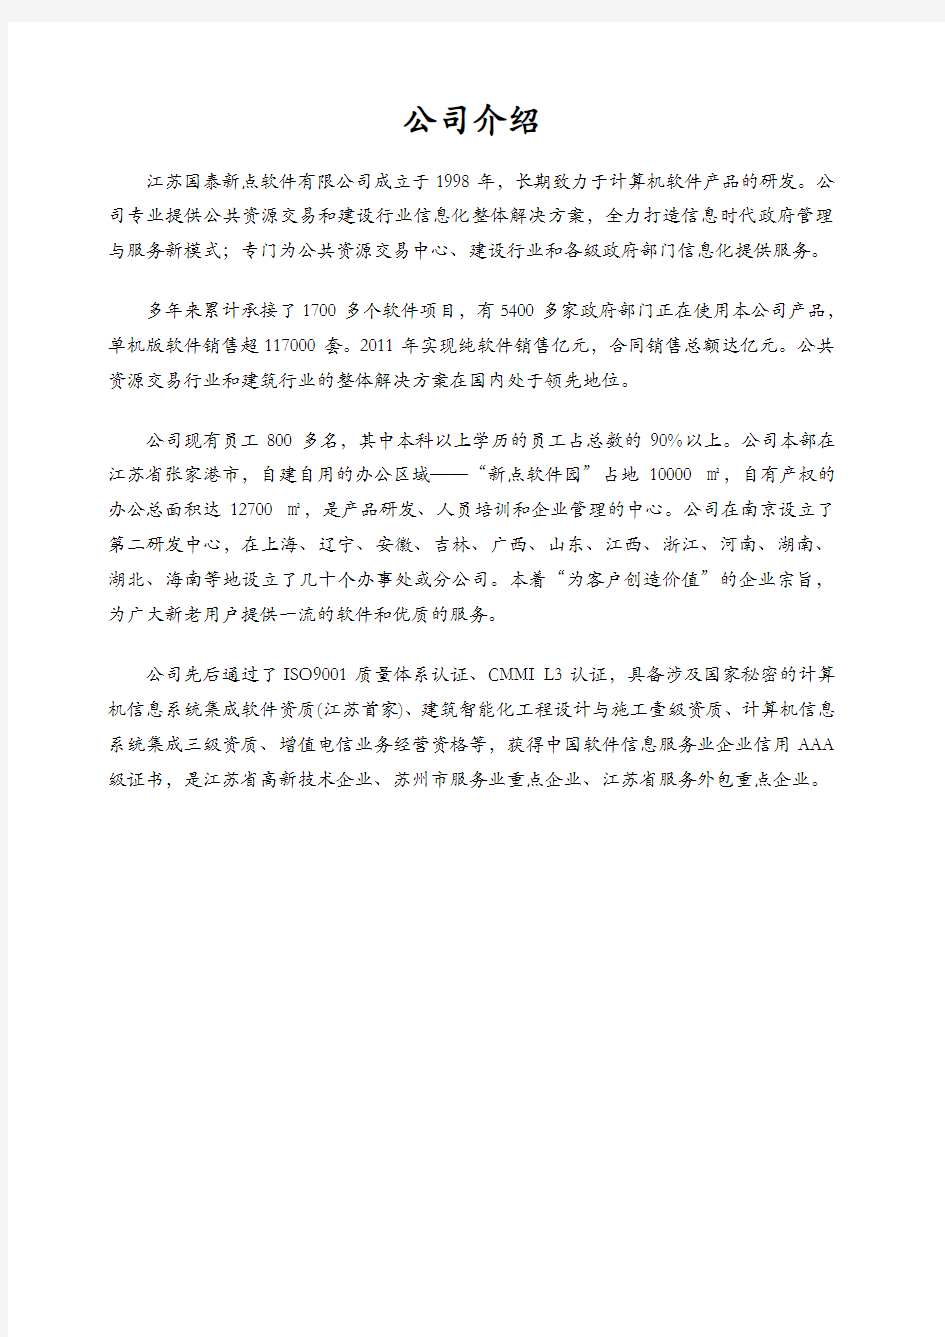 江苏省网上招投标文件制作工具说明